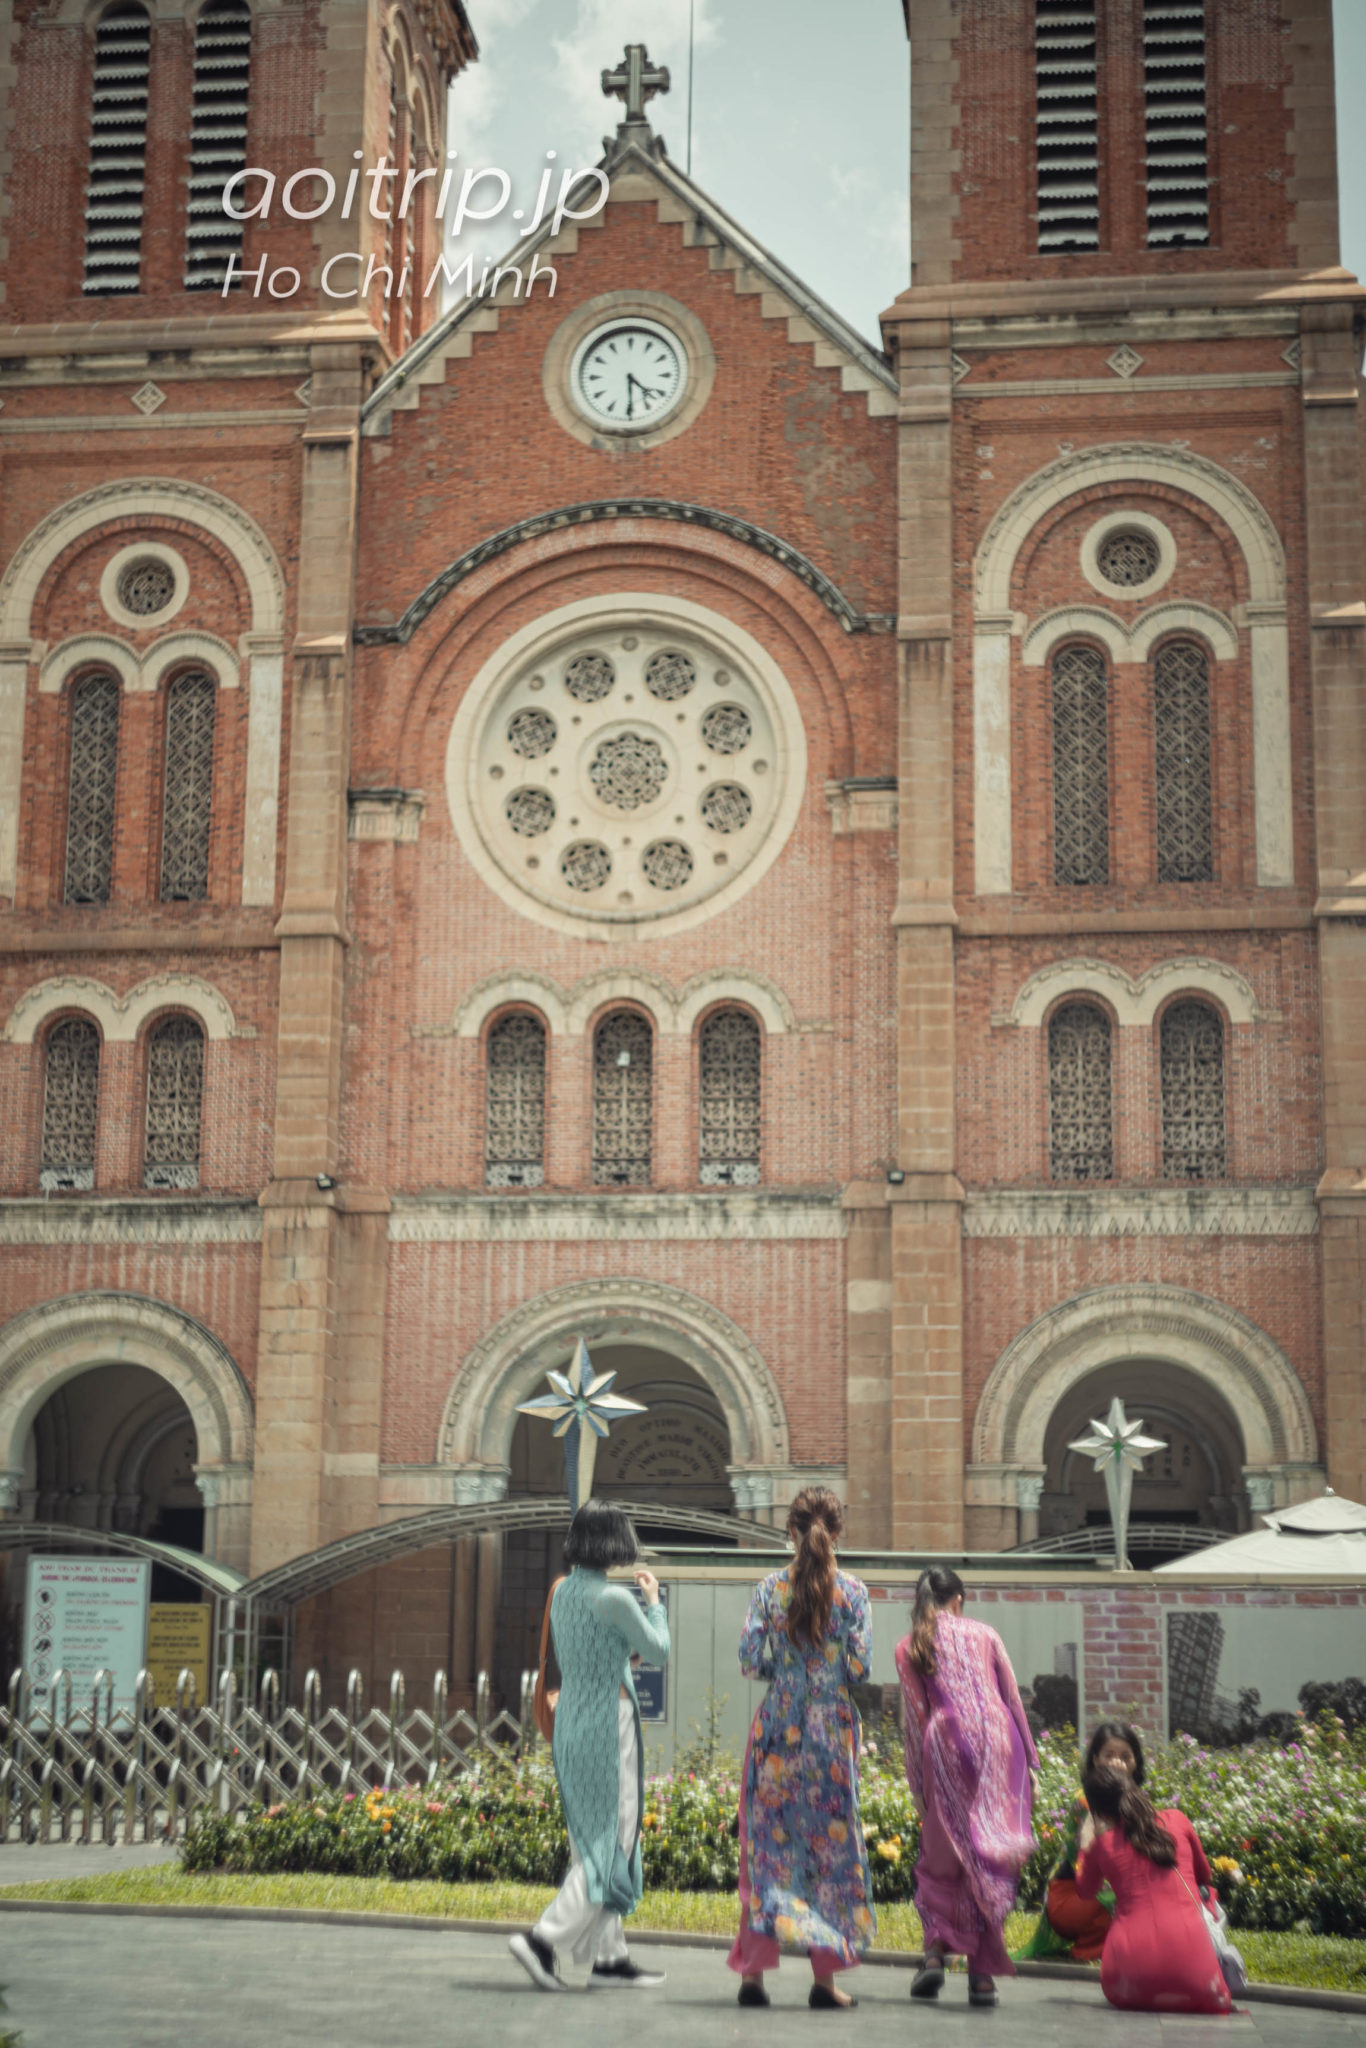 ホーチミンのサイゴン大教会